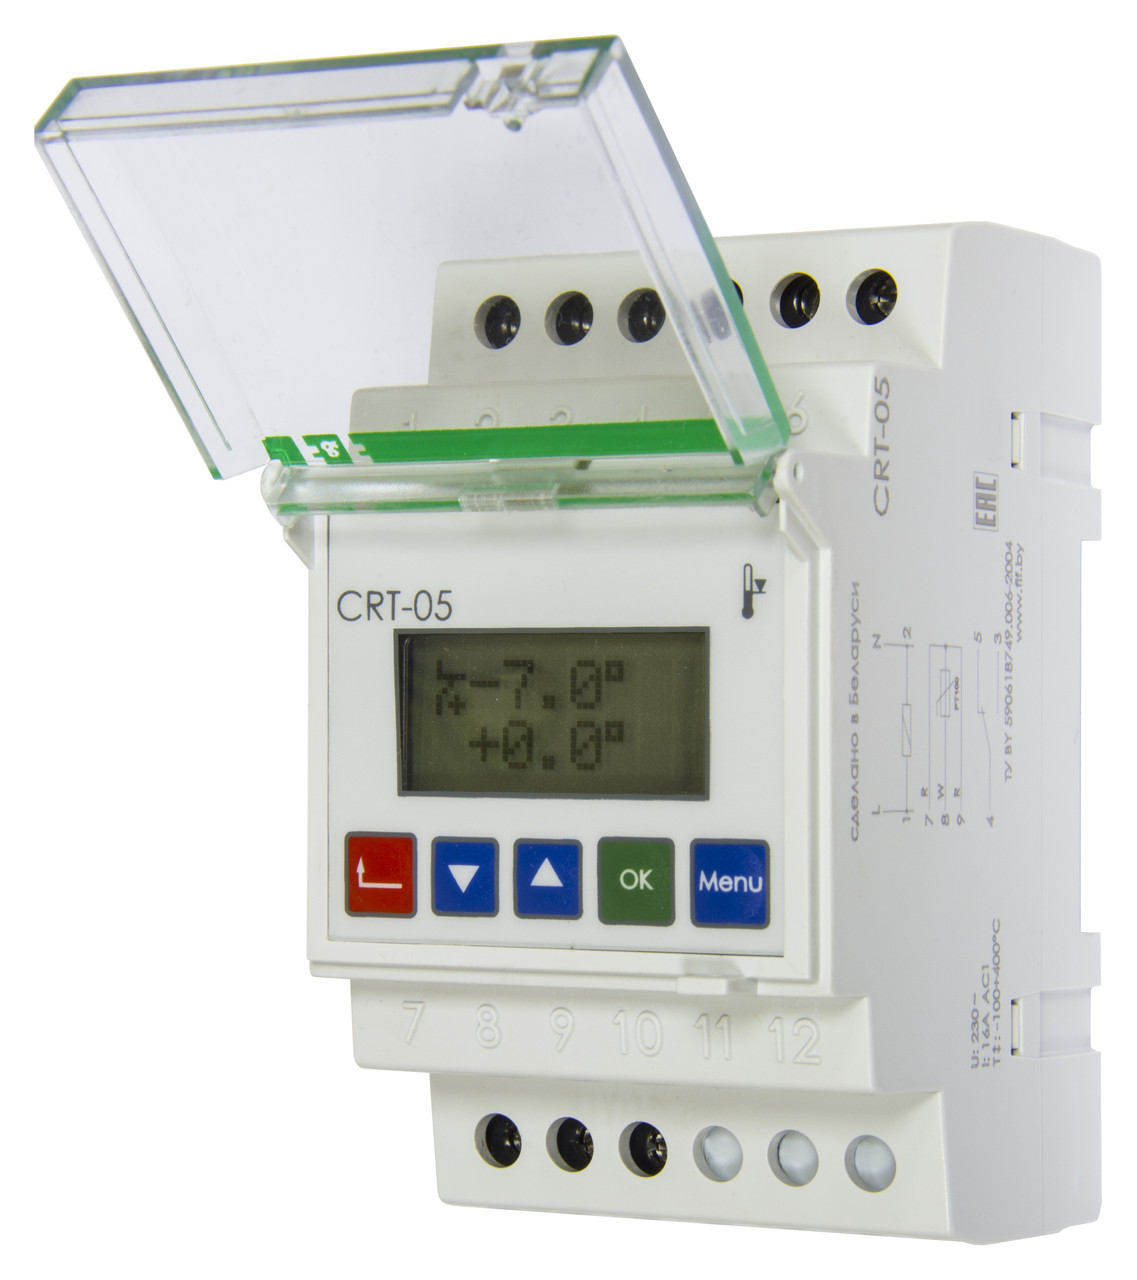 CRT-05 Программируемый многофункциональный контроллер предназначен для контроля отопительного оборудования